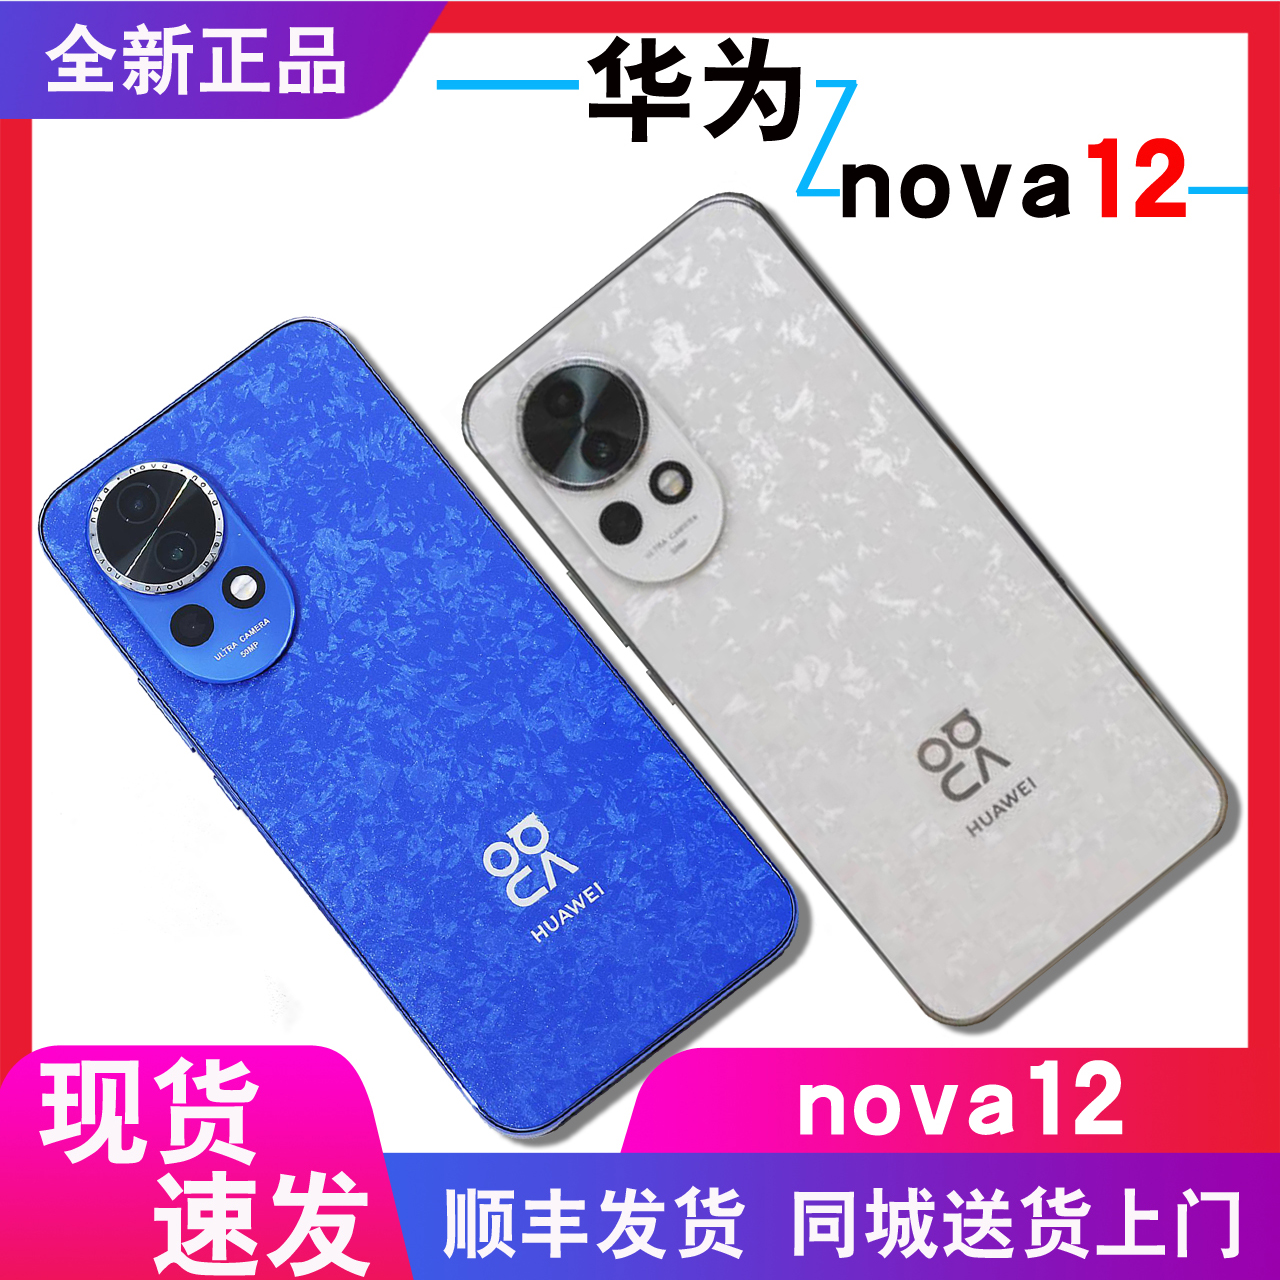 成都闪送+分期付款Huawei/华为 nova 12官方正品手机原封未激活